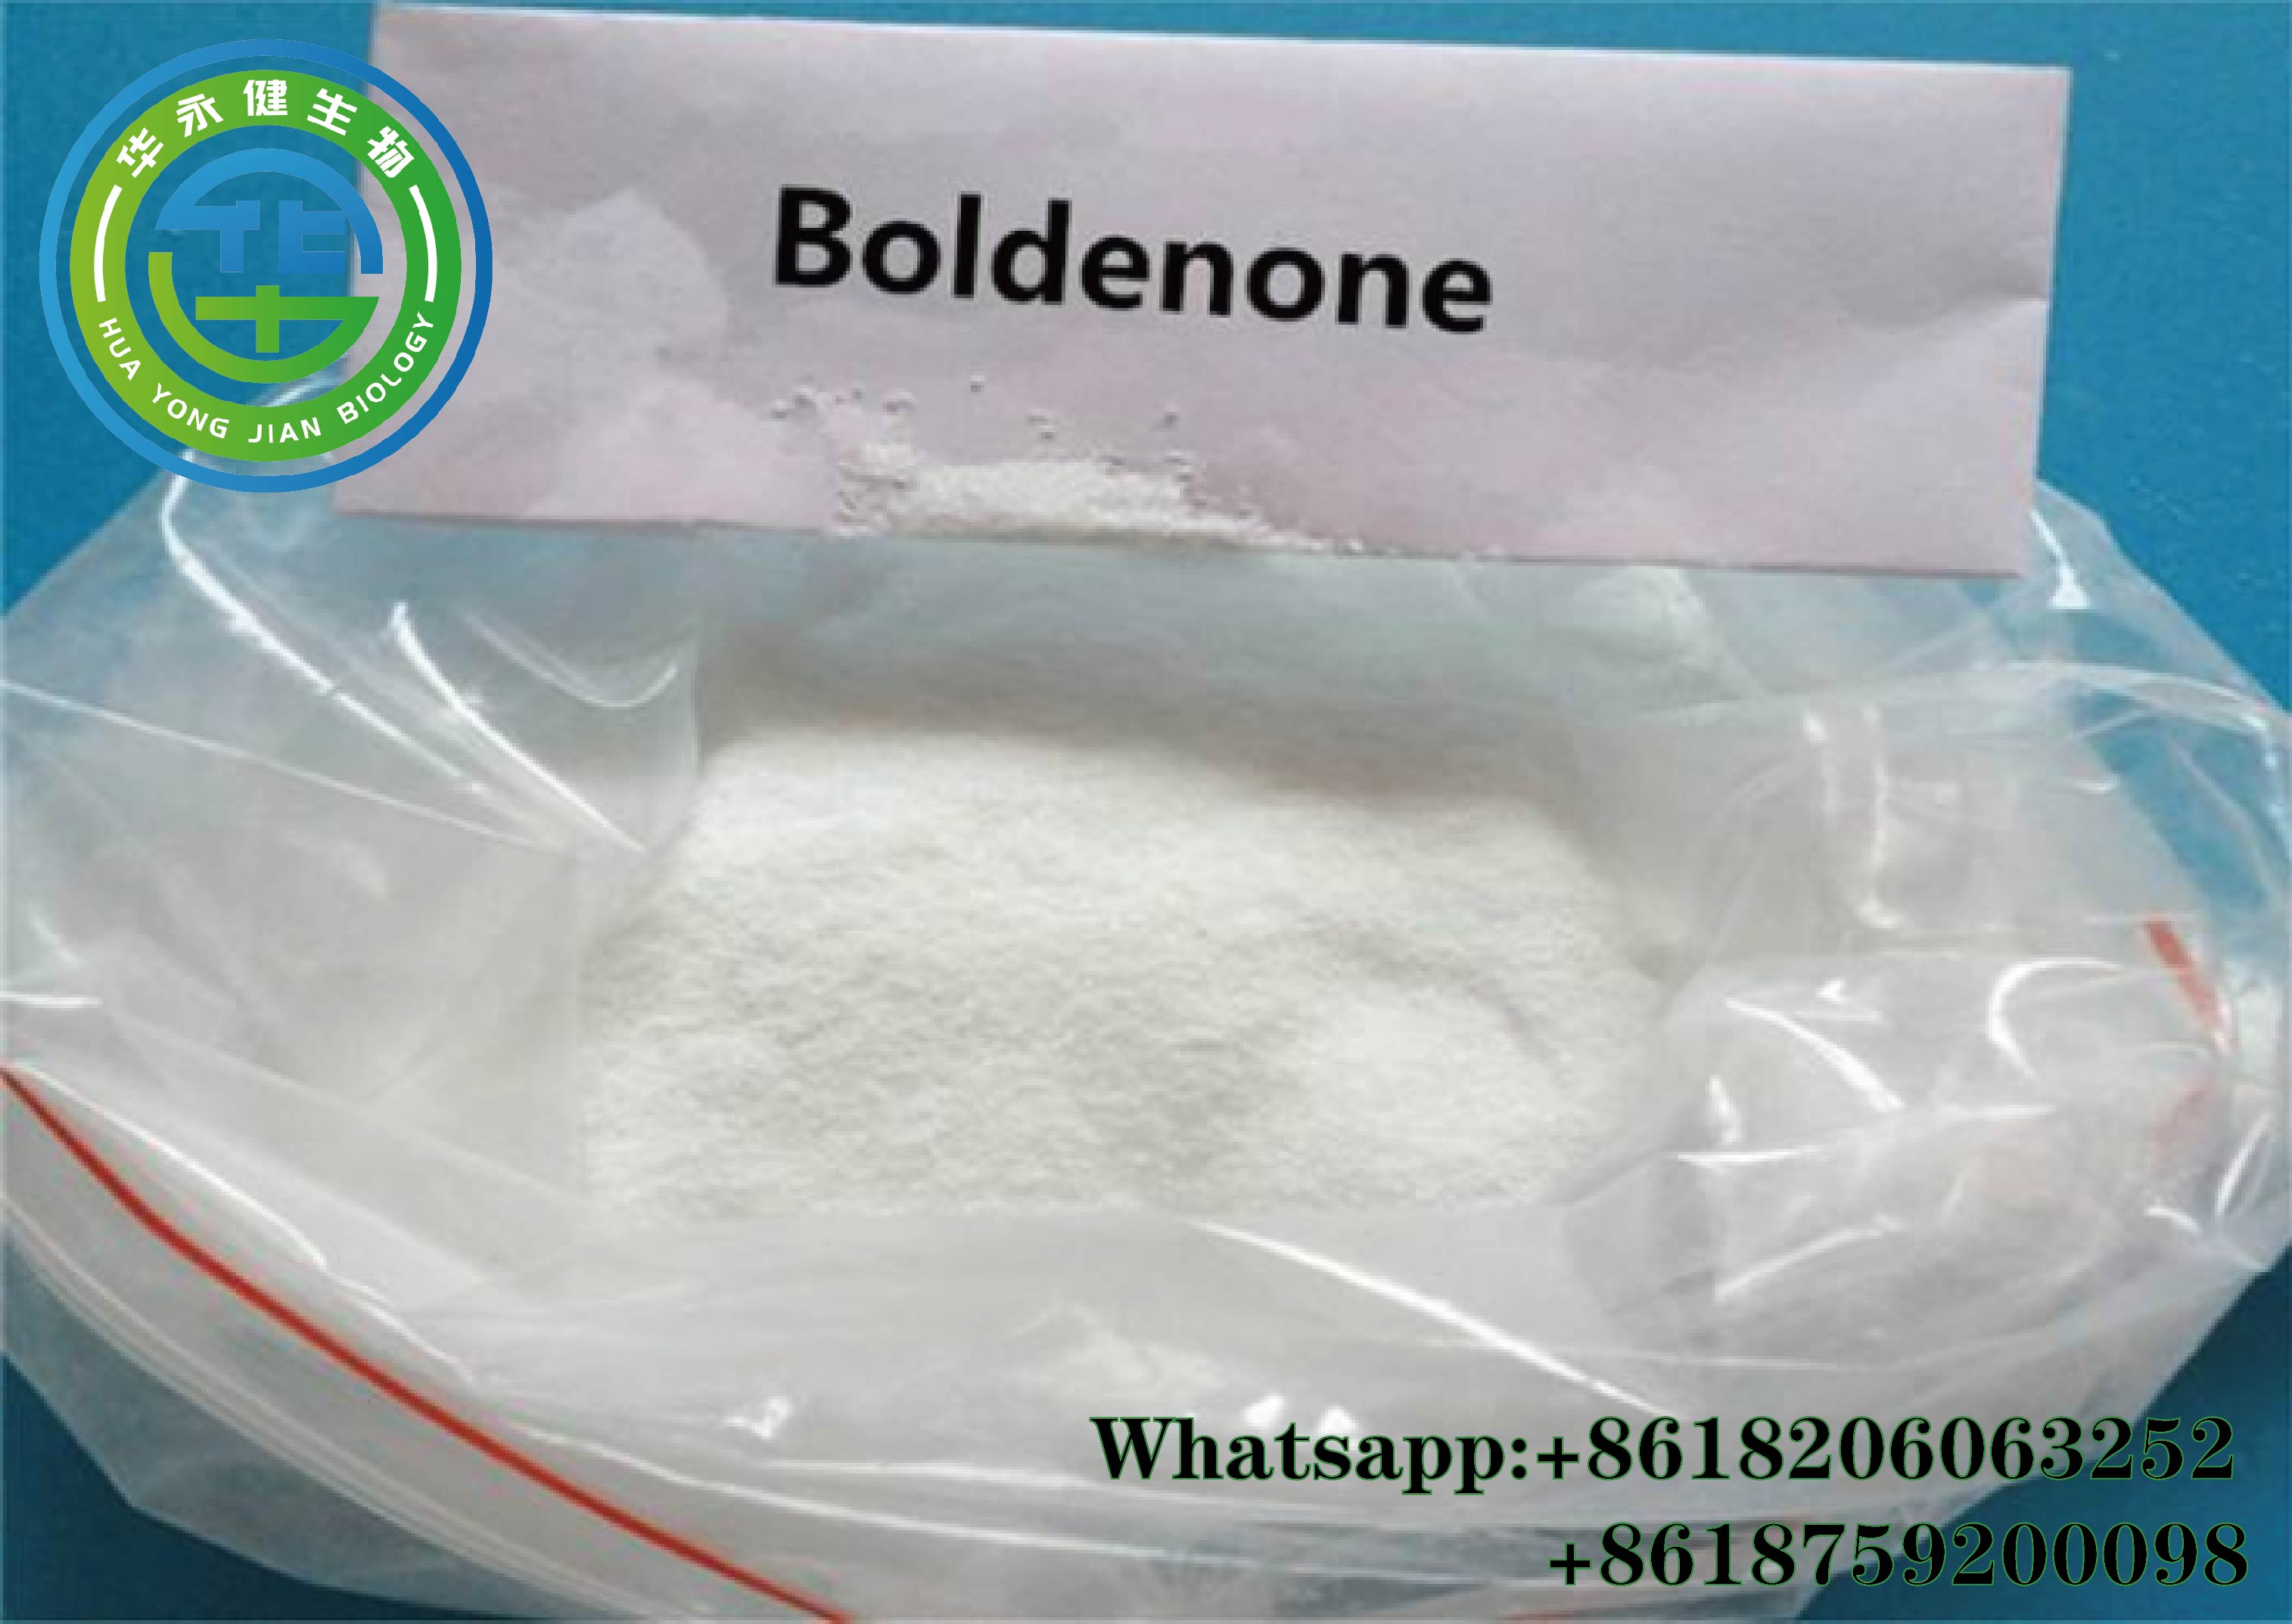 Boldenone9